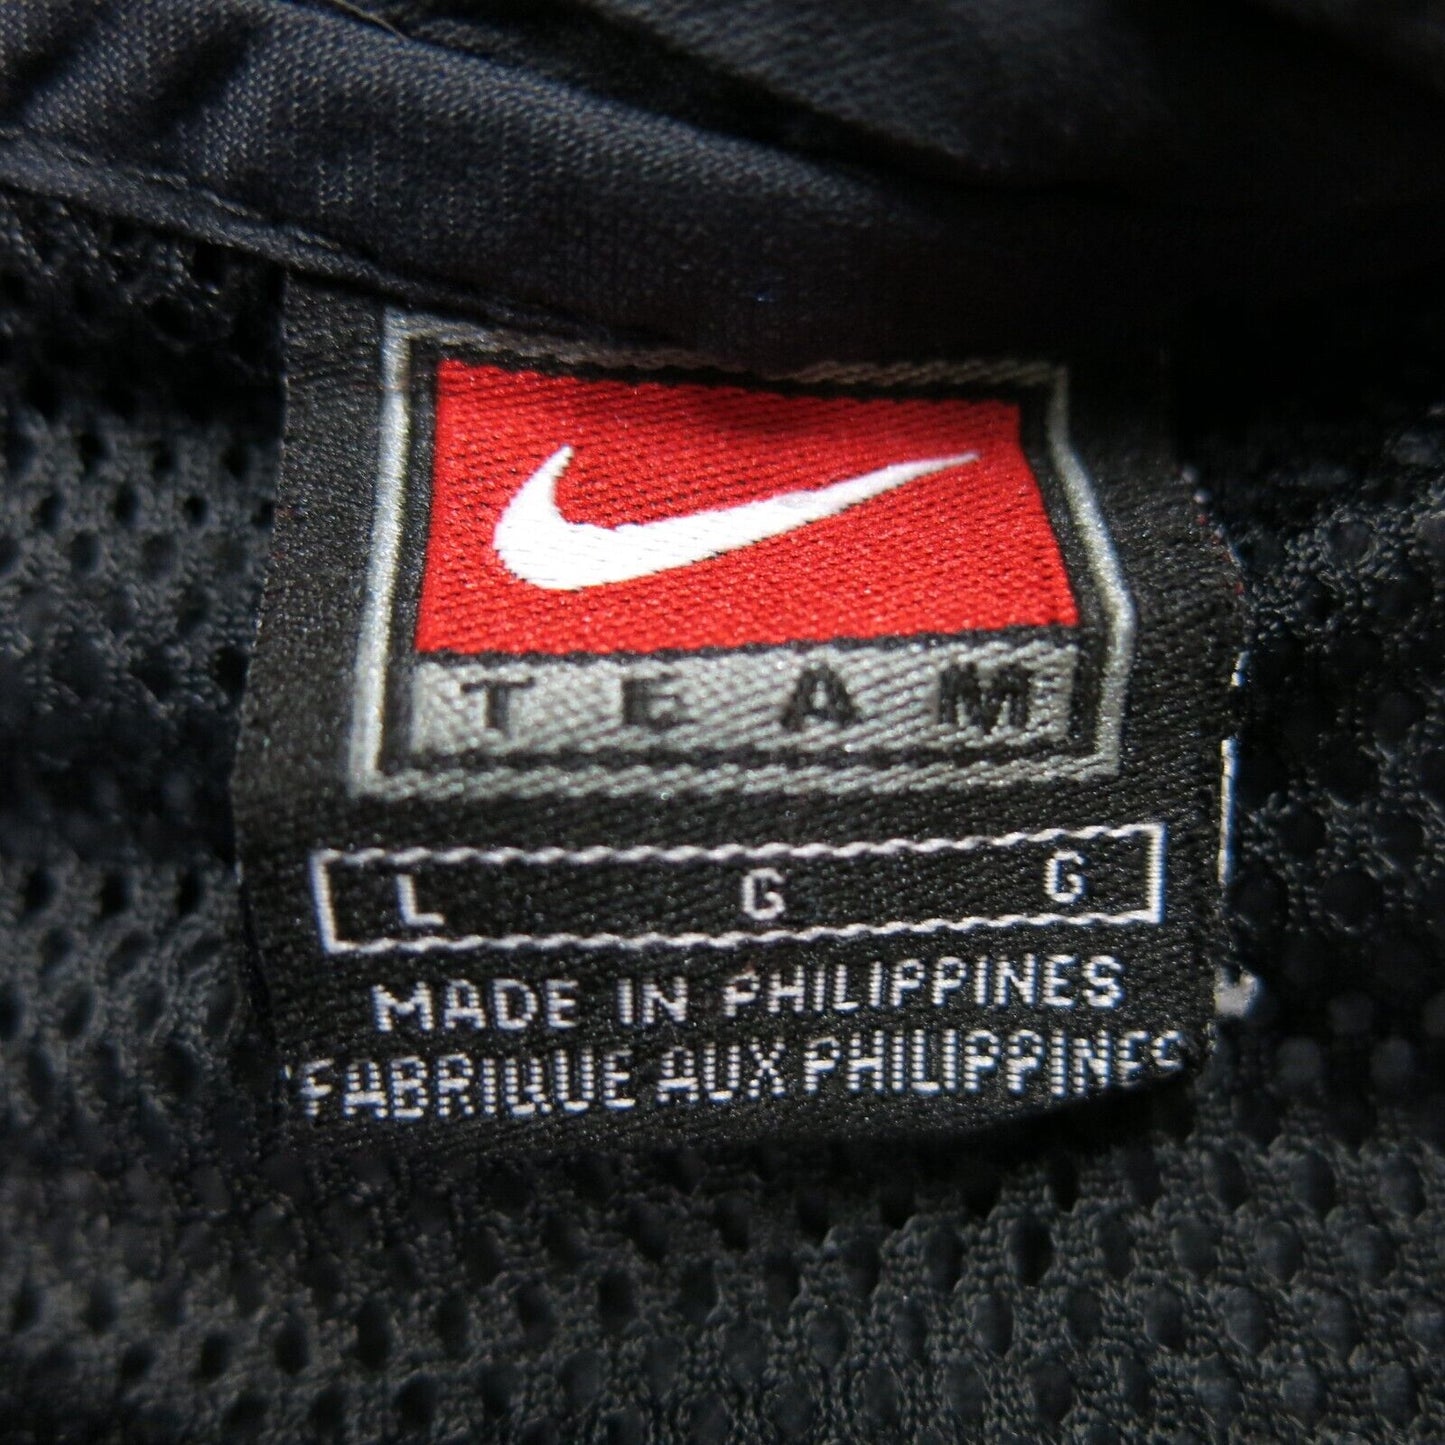 Nike Team Mens Pullover Jacket V Neck Long Sleeves 2 Pockets Black Size Large